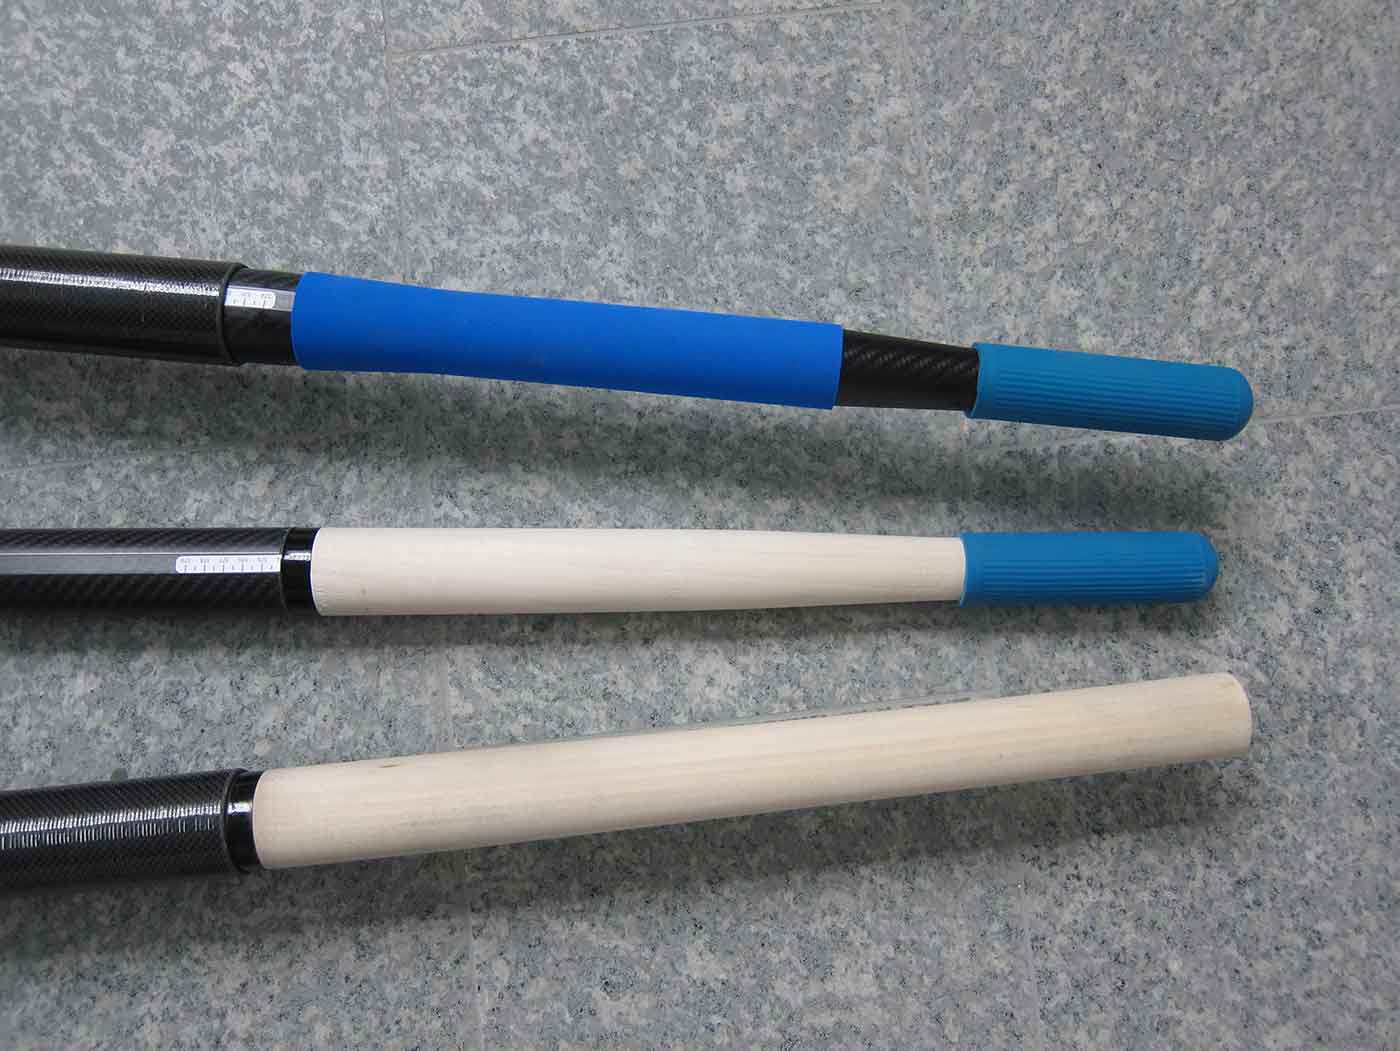 oar handles